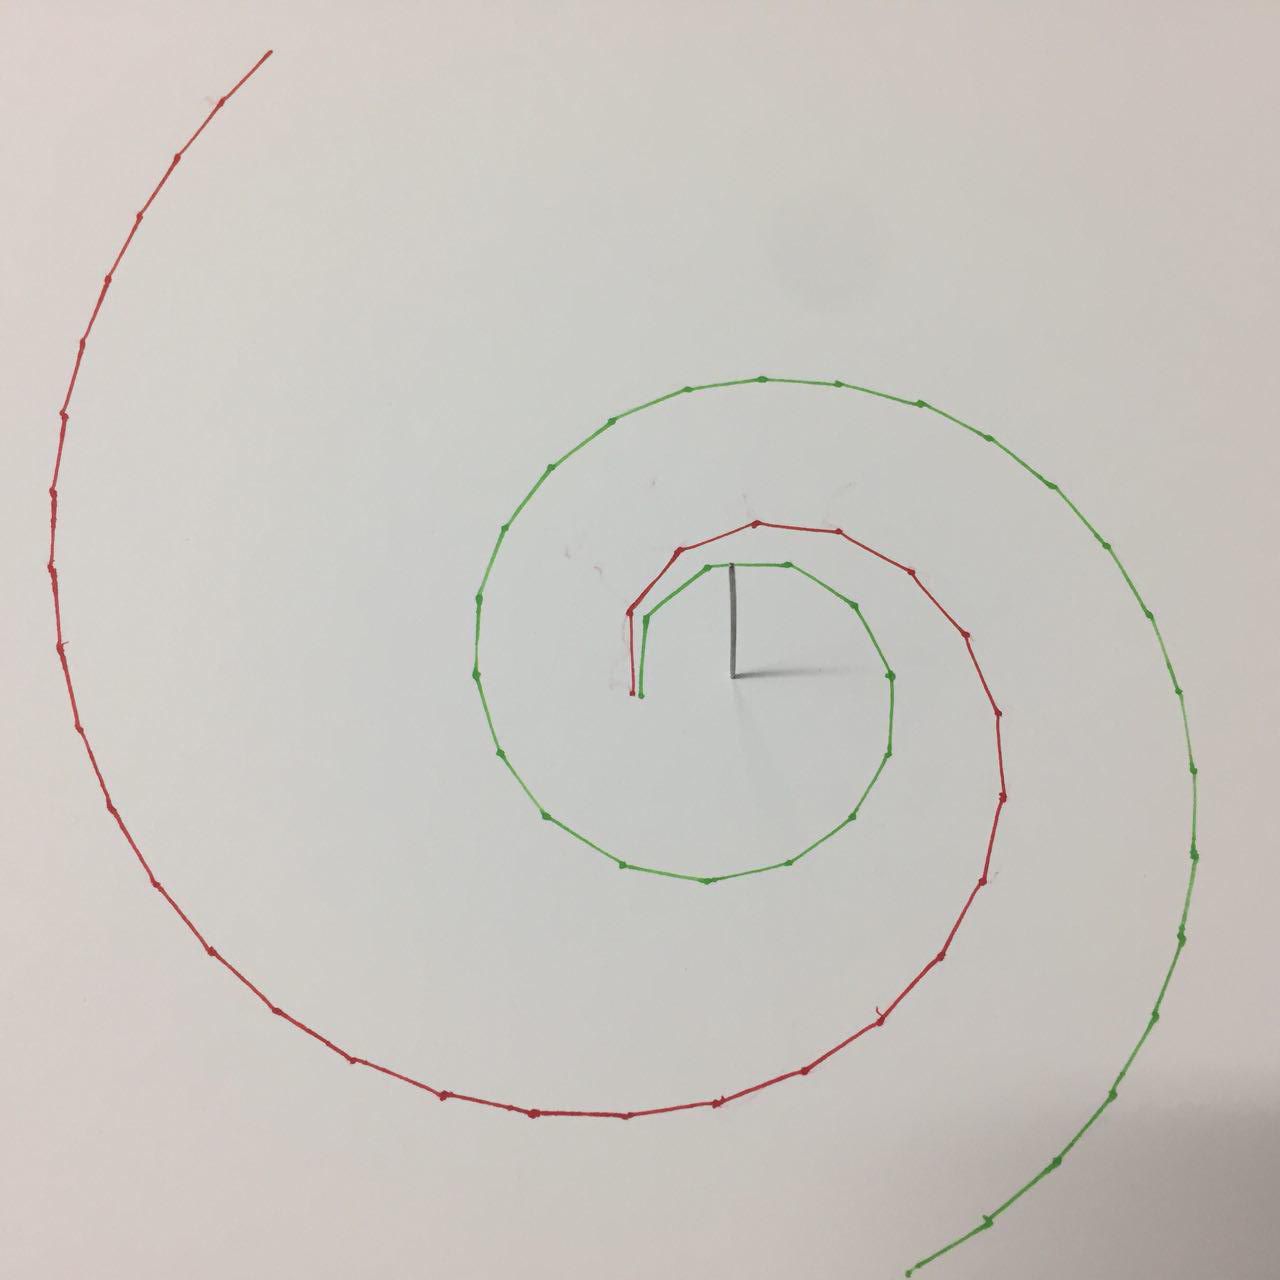 Una regla para dibujar espirales logarítmicas y deshacer mitos